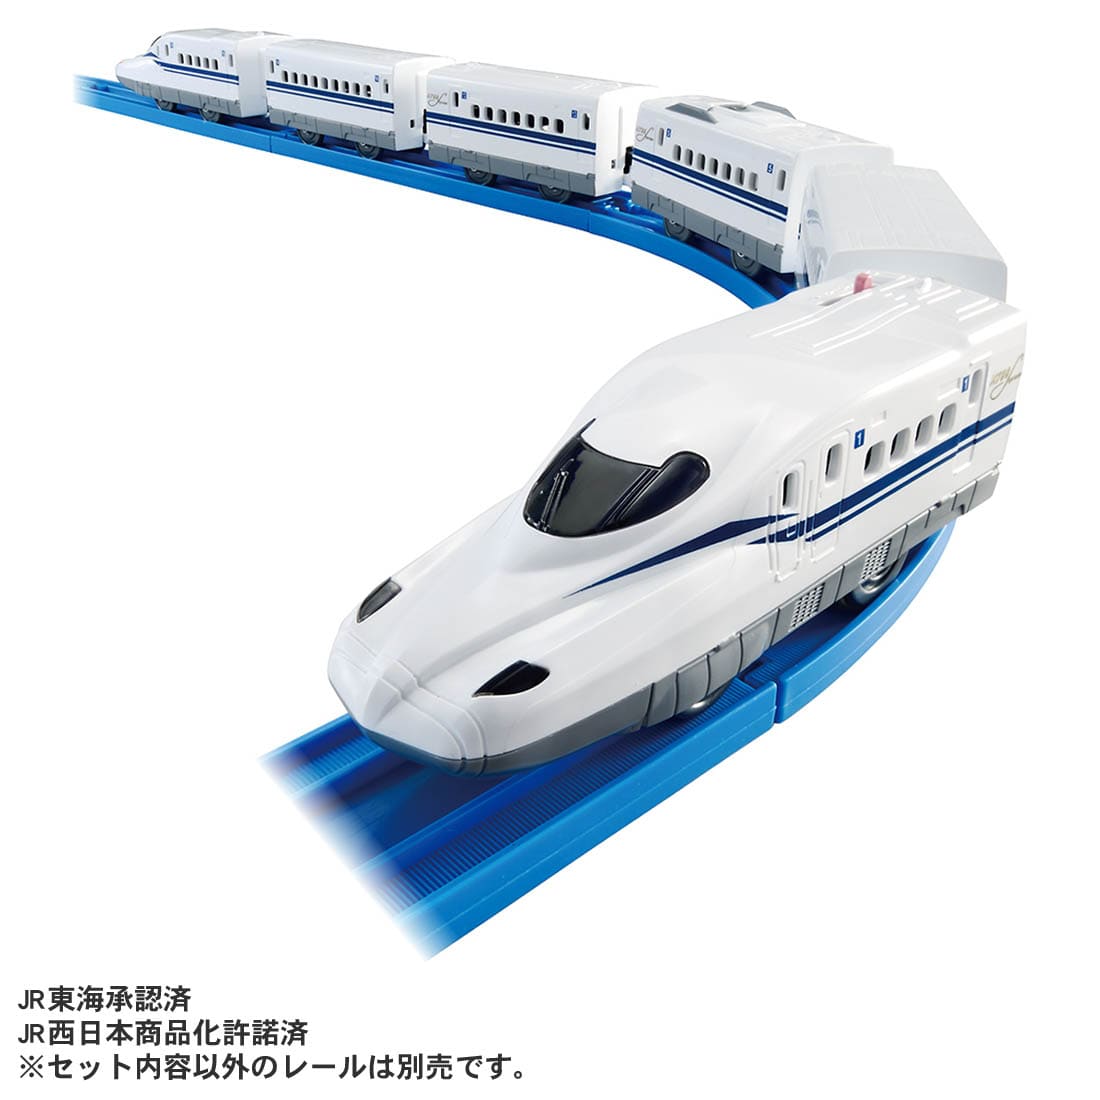 《TAKARA TOMY》PLARAIL鐵道王國 N700S 新幹線變速列車組-6節車廂 東喬精品百貨